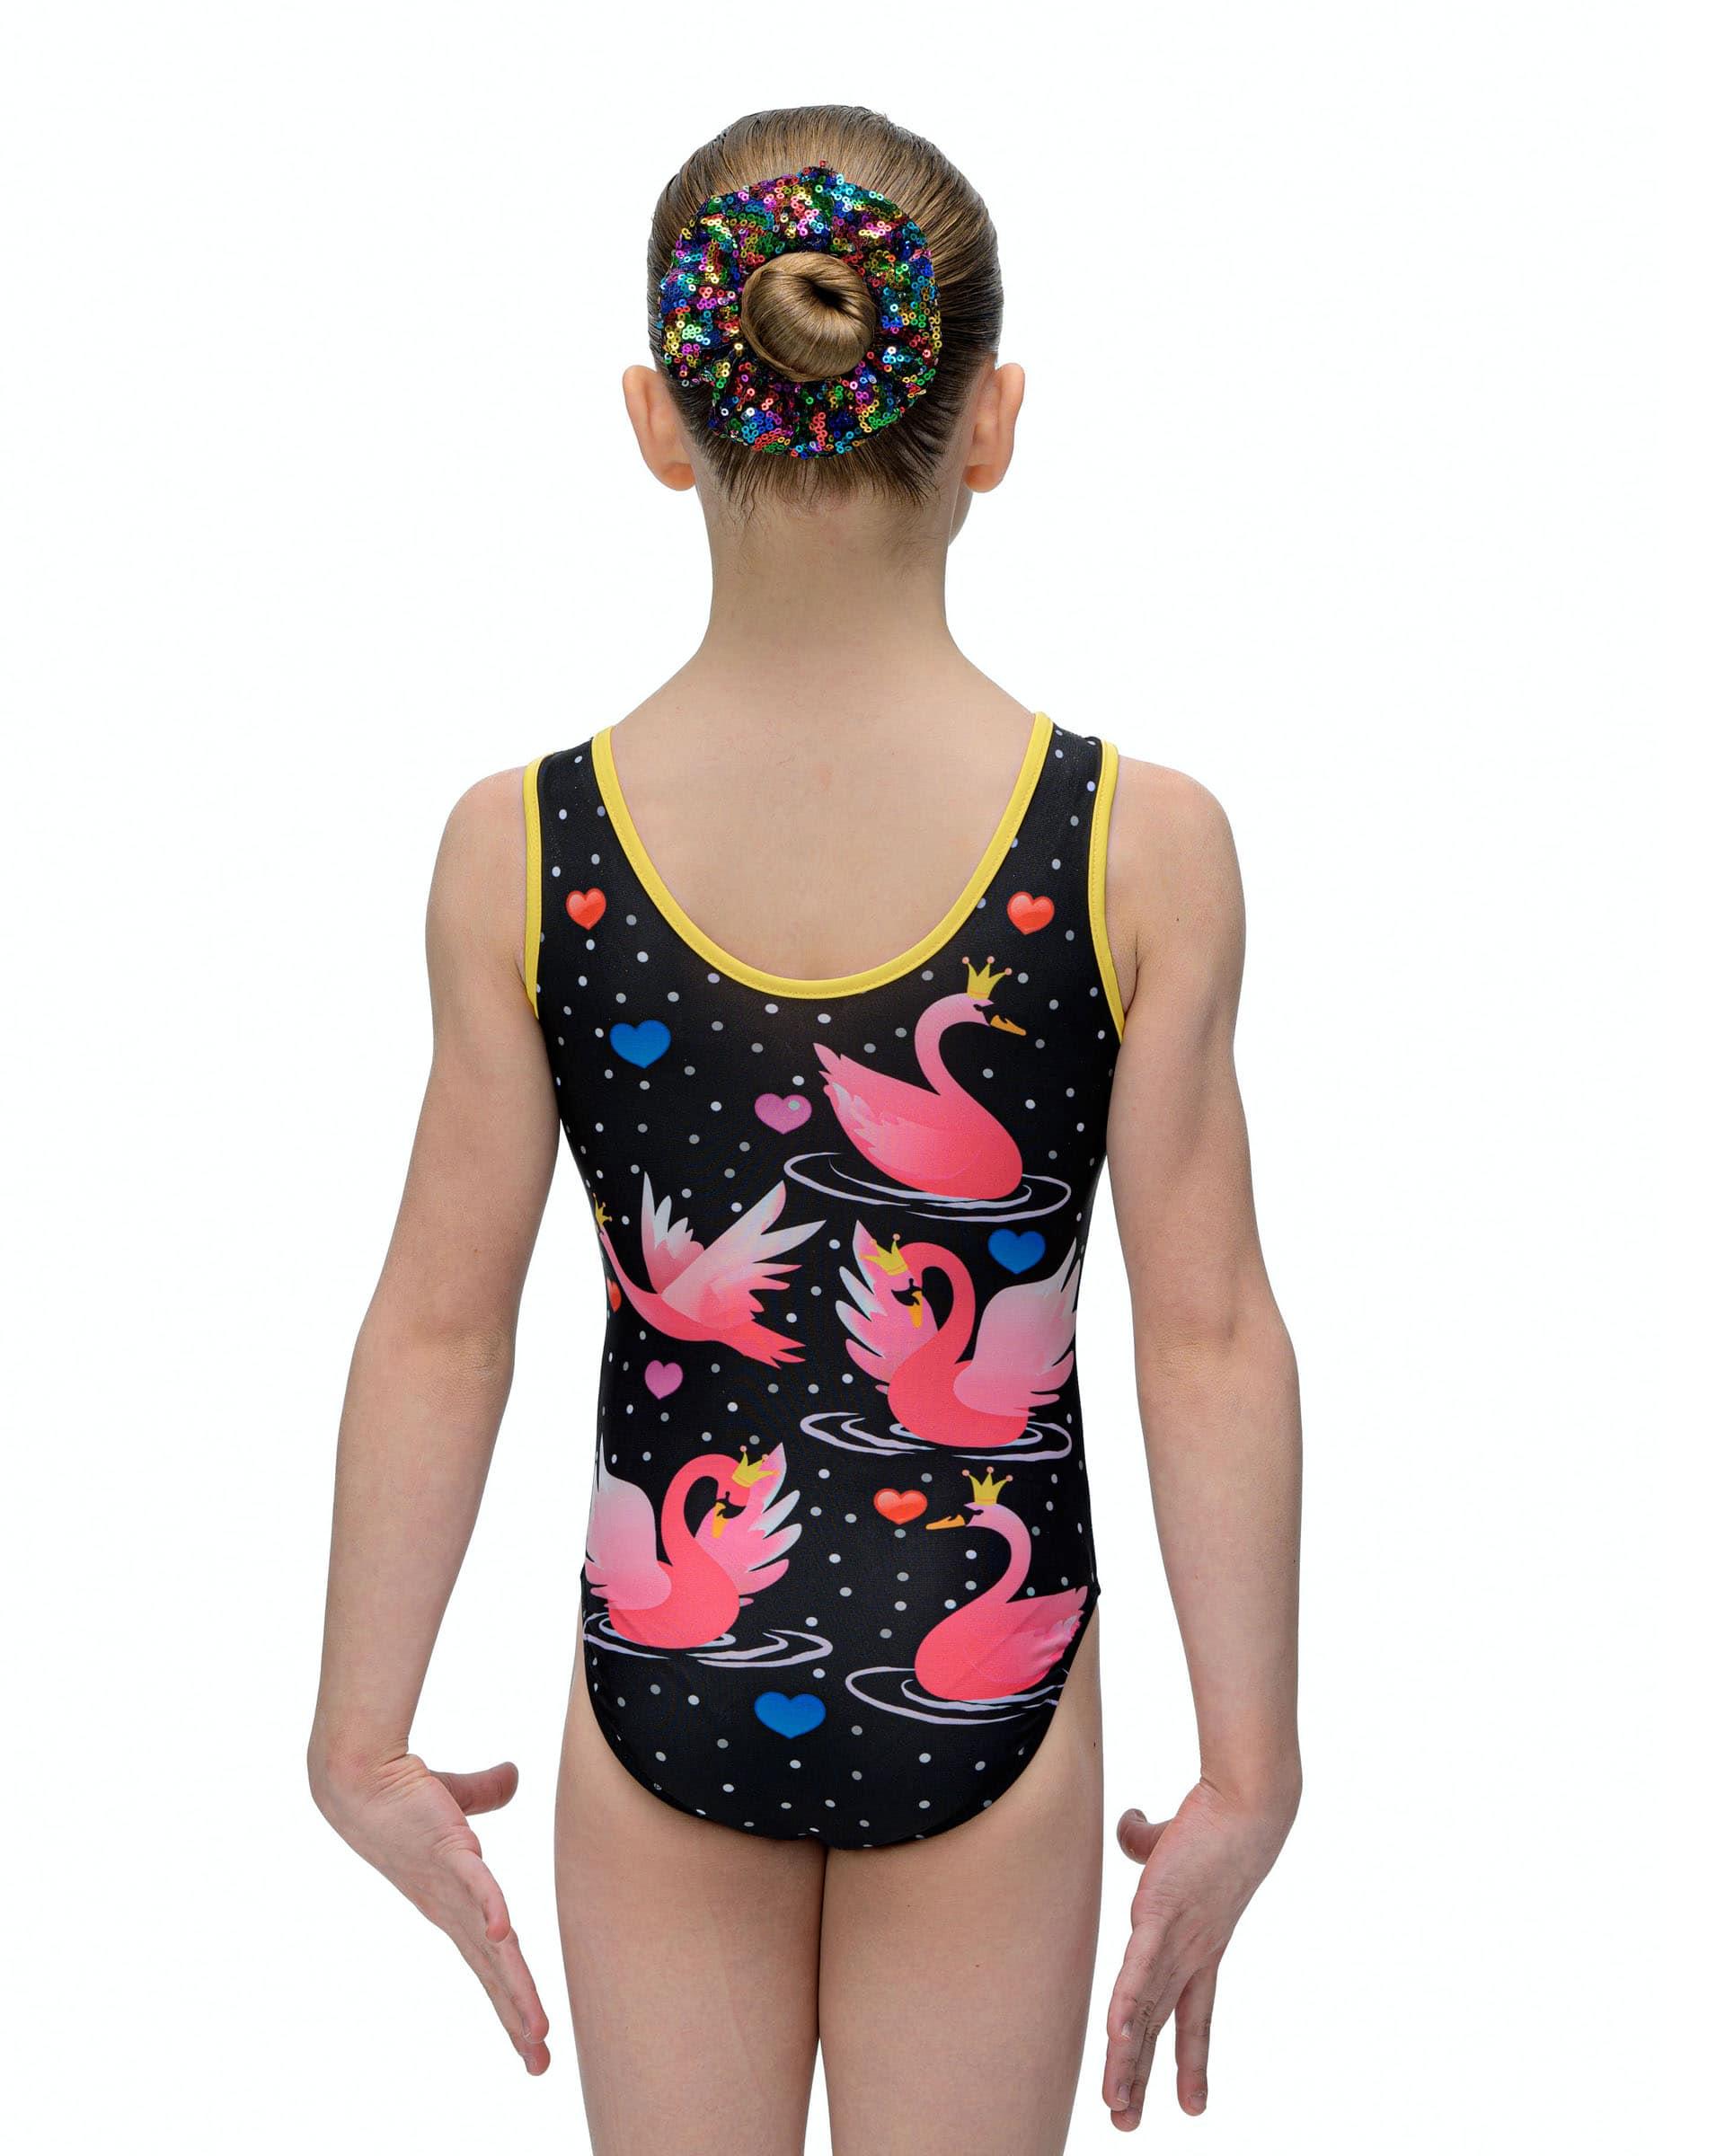 Купальник женский для спортивной гимнастики GK Sport 202-15 черный с розовыми лебедями без рукава